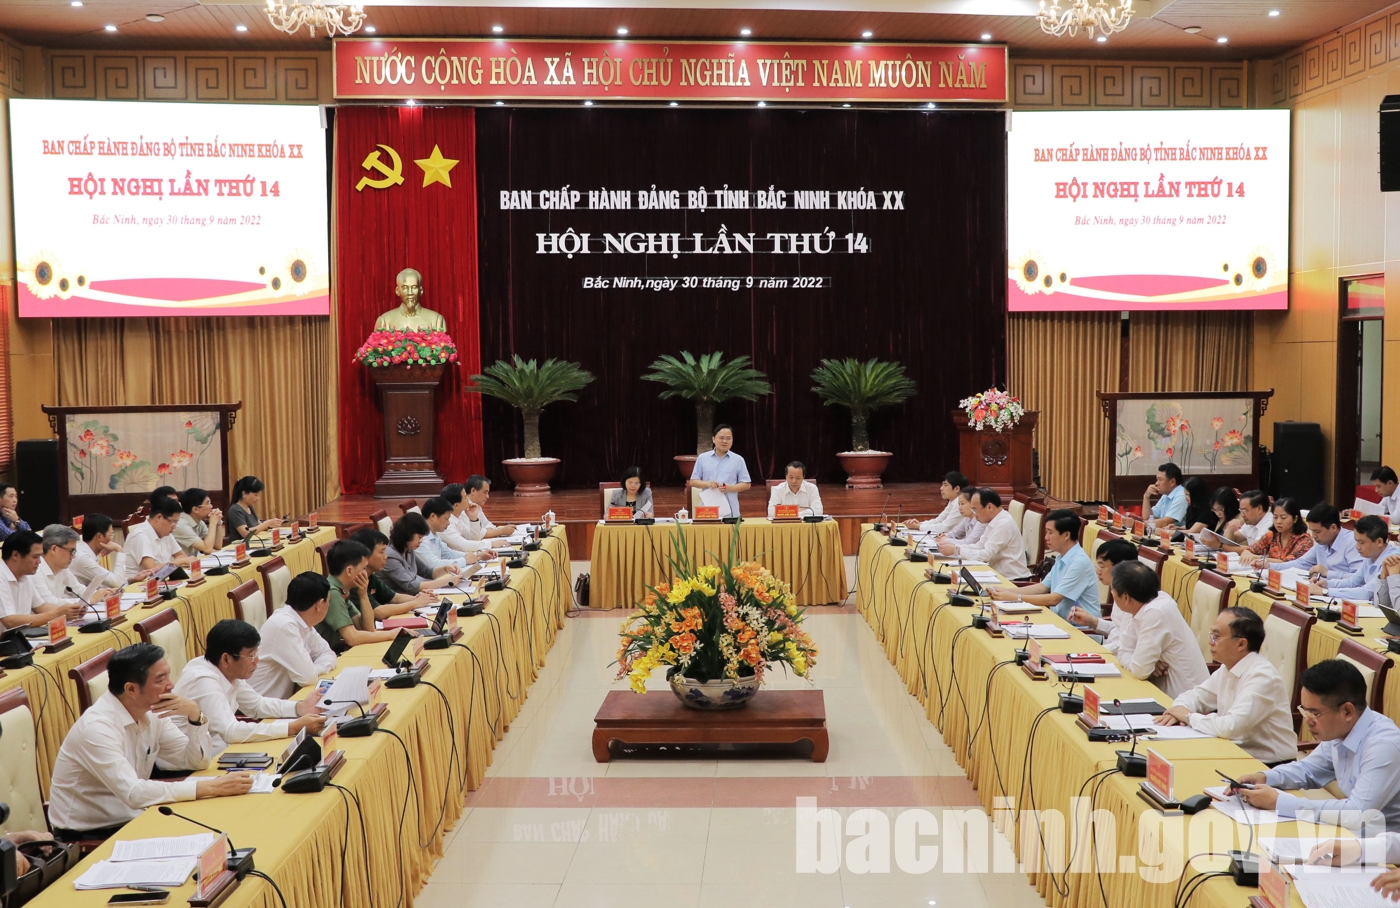 Hội nghị lần thứ 14, Ban Chấp hành Đảng bộ tỉnh Bắc Ninh khóa XX